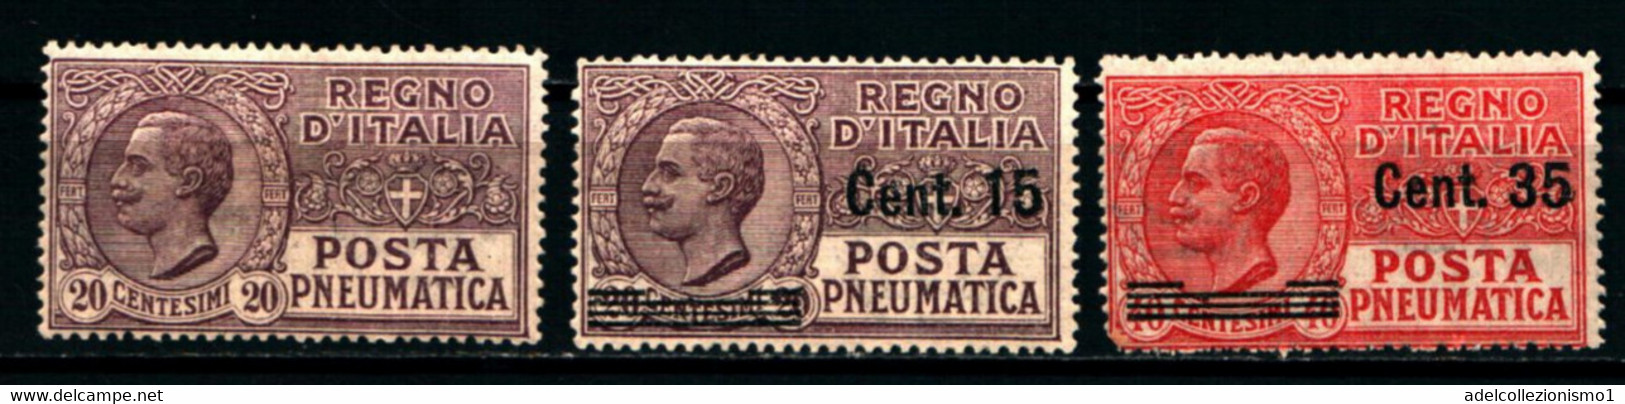 40176) ITALIA-Pneumatica Tipo Leoni Sovrastampati - POSTA PNEUMATICA - 1925/27 -  3 VALORI- MLH* - Rohrpost